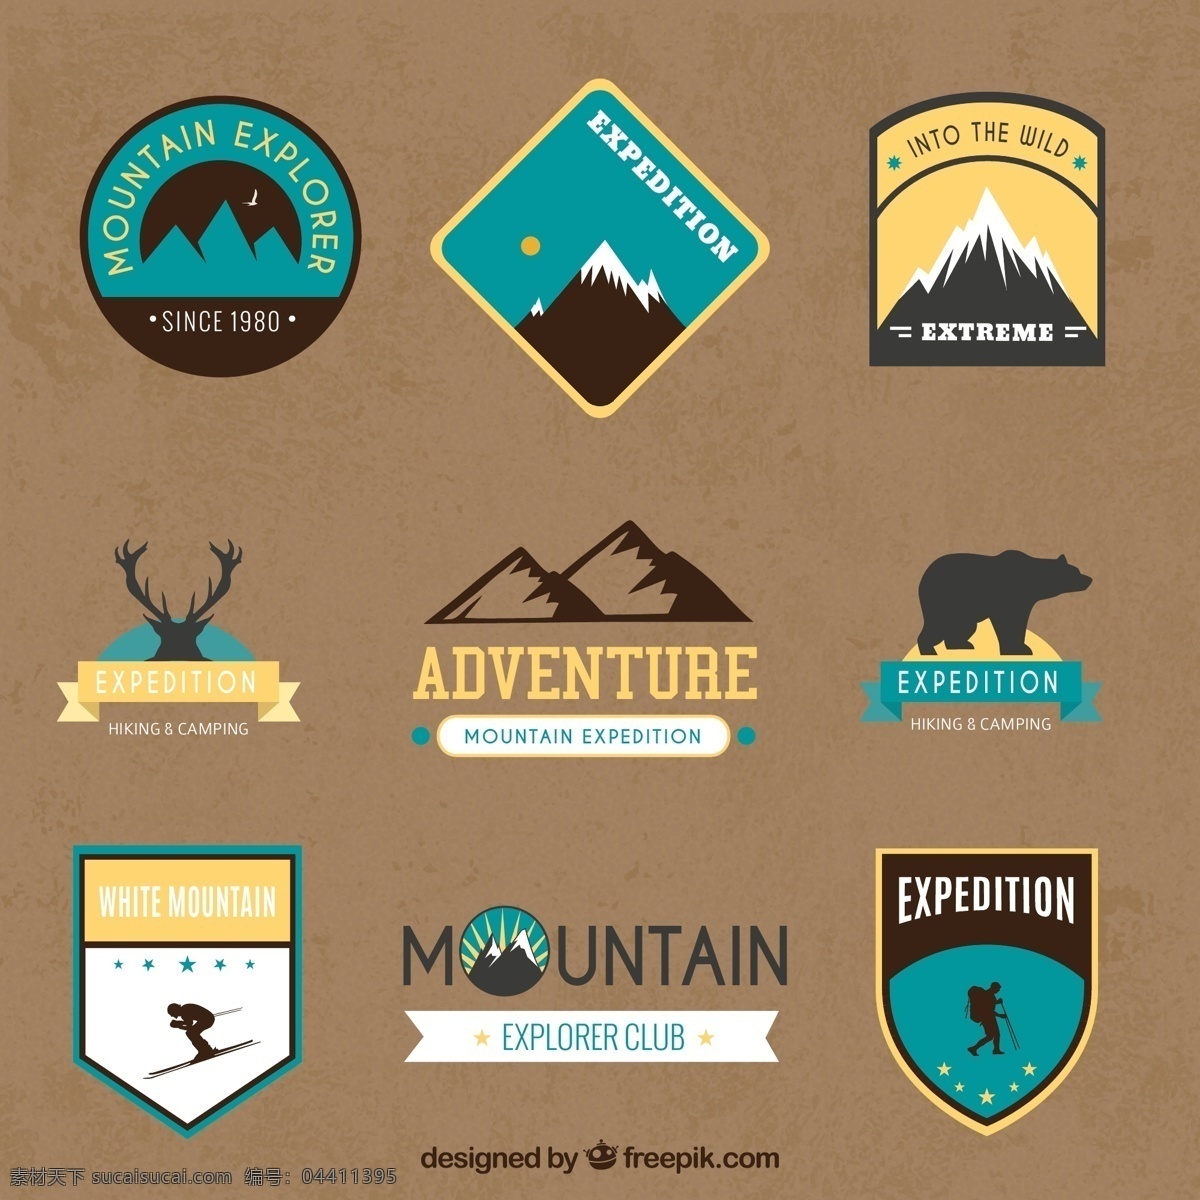 创意 山地 探险 标签 矢量图 鹿 徒步旅行 雪山 山 登山 野营 熊 滑雪 人物